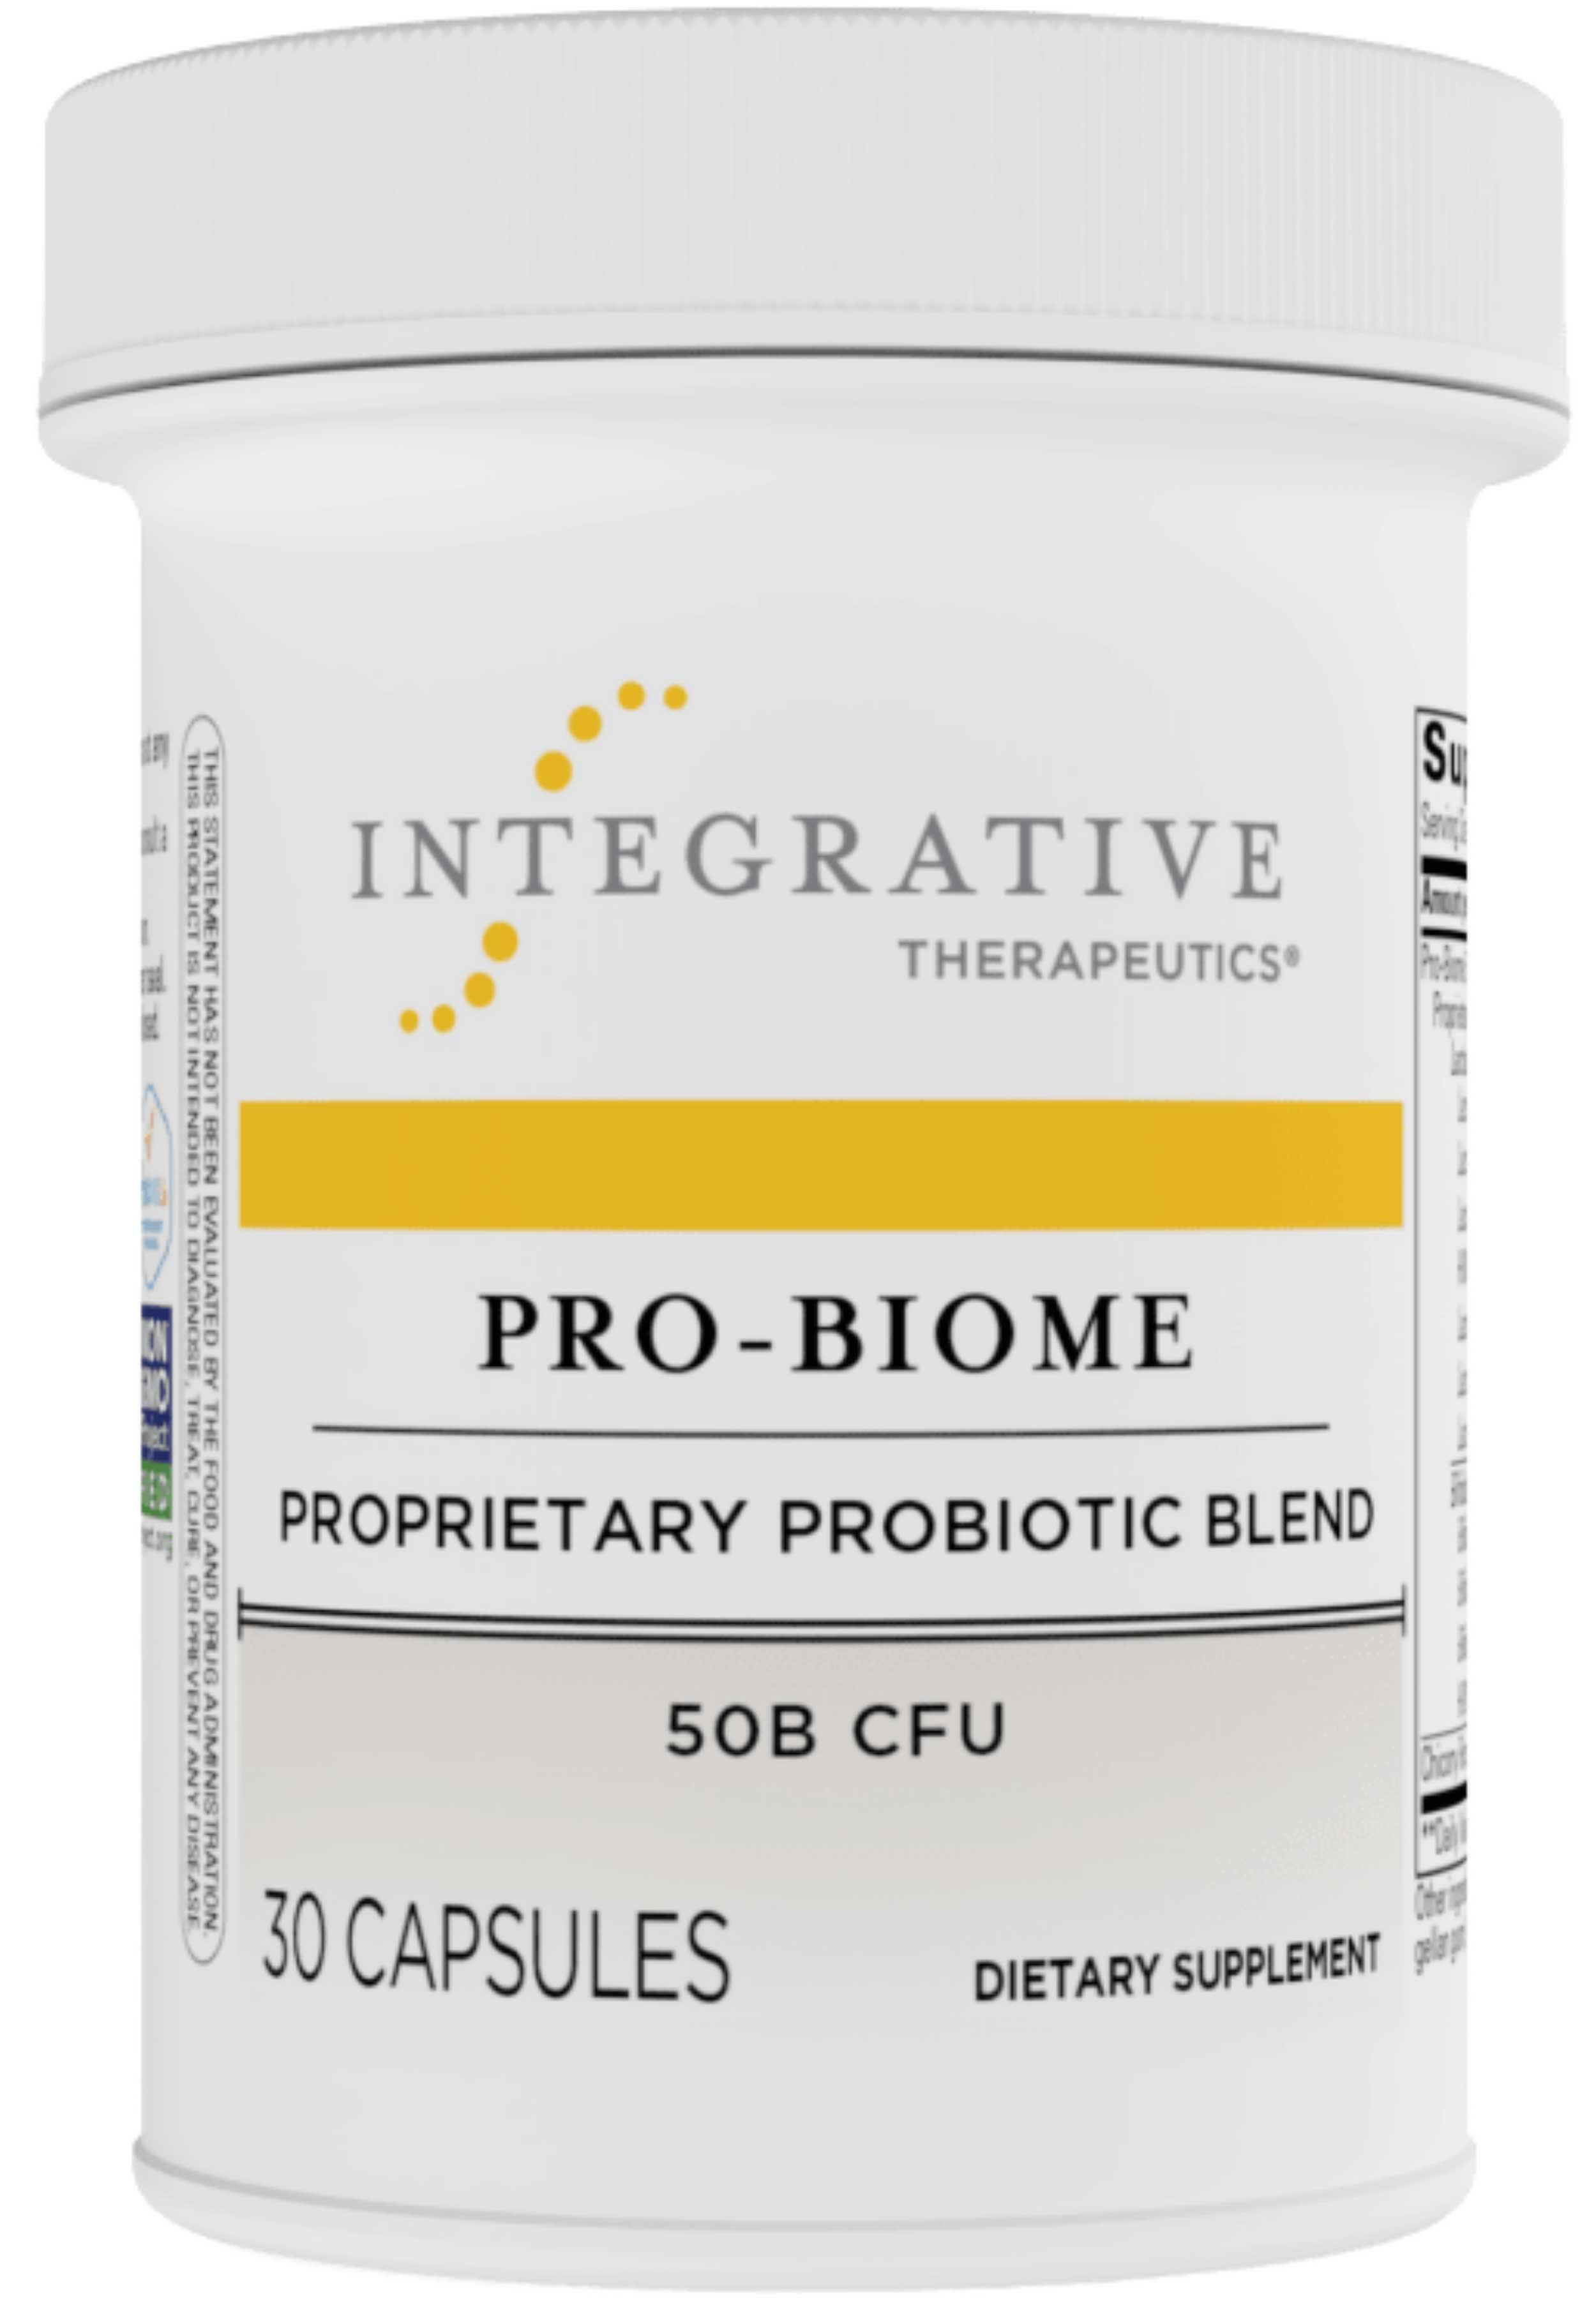 Integrative Therapeutics - Pro-Biome - 30 Capsules